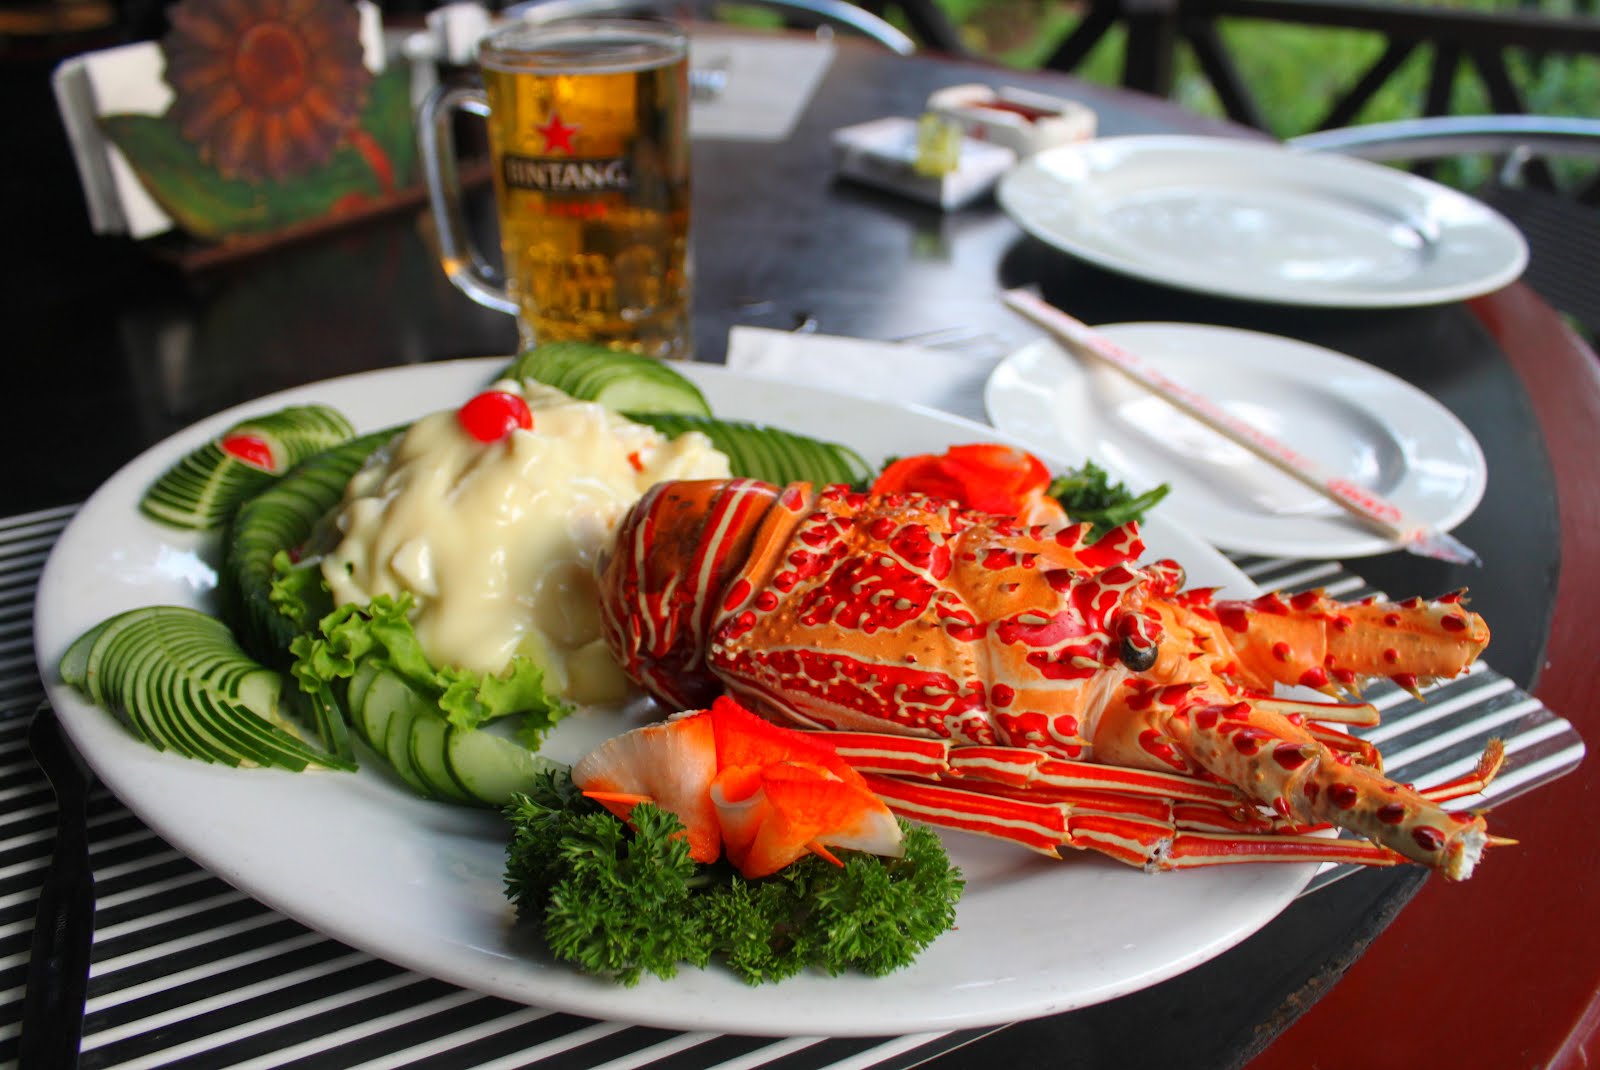 https://blogger.googleusercontent.com/img/b/R29vZ2xl/AVvXsEjj02J31mAU42bGrTjrzkT3nc3HTgxK3lvWGFDxeuo05JgqZmU5b84tfVSplOlqa9Xkjm6JXeQ14ClOsfeGHYfbLoL4mA9WxoWIVJO6cQhyAh0z2MPqQkzUA3_xdXpGpfDkcifcXz1QgA/s1600/Lobster+Lunch+in+Jakarta+Indonesia.jpg